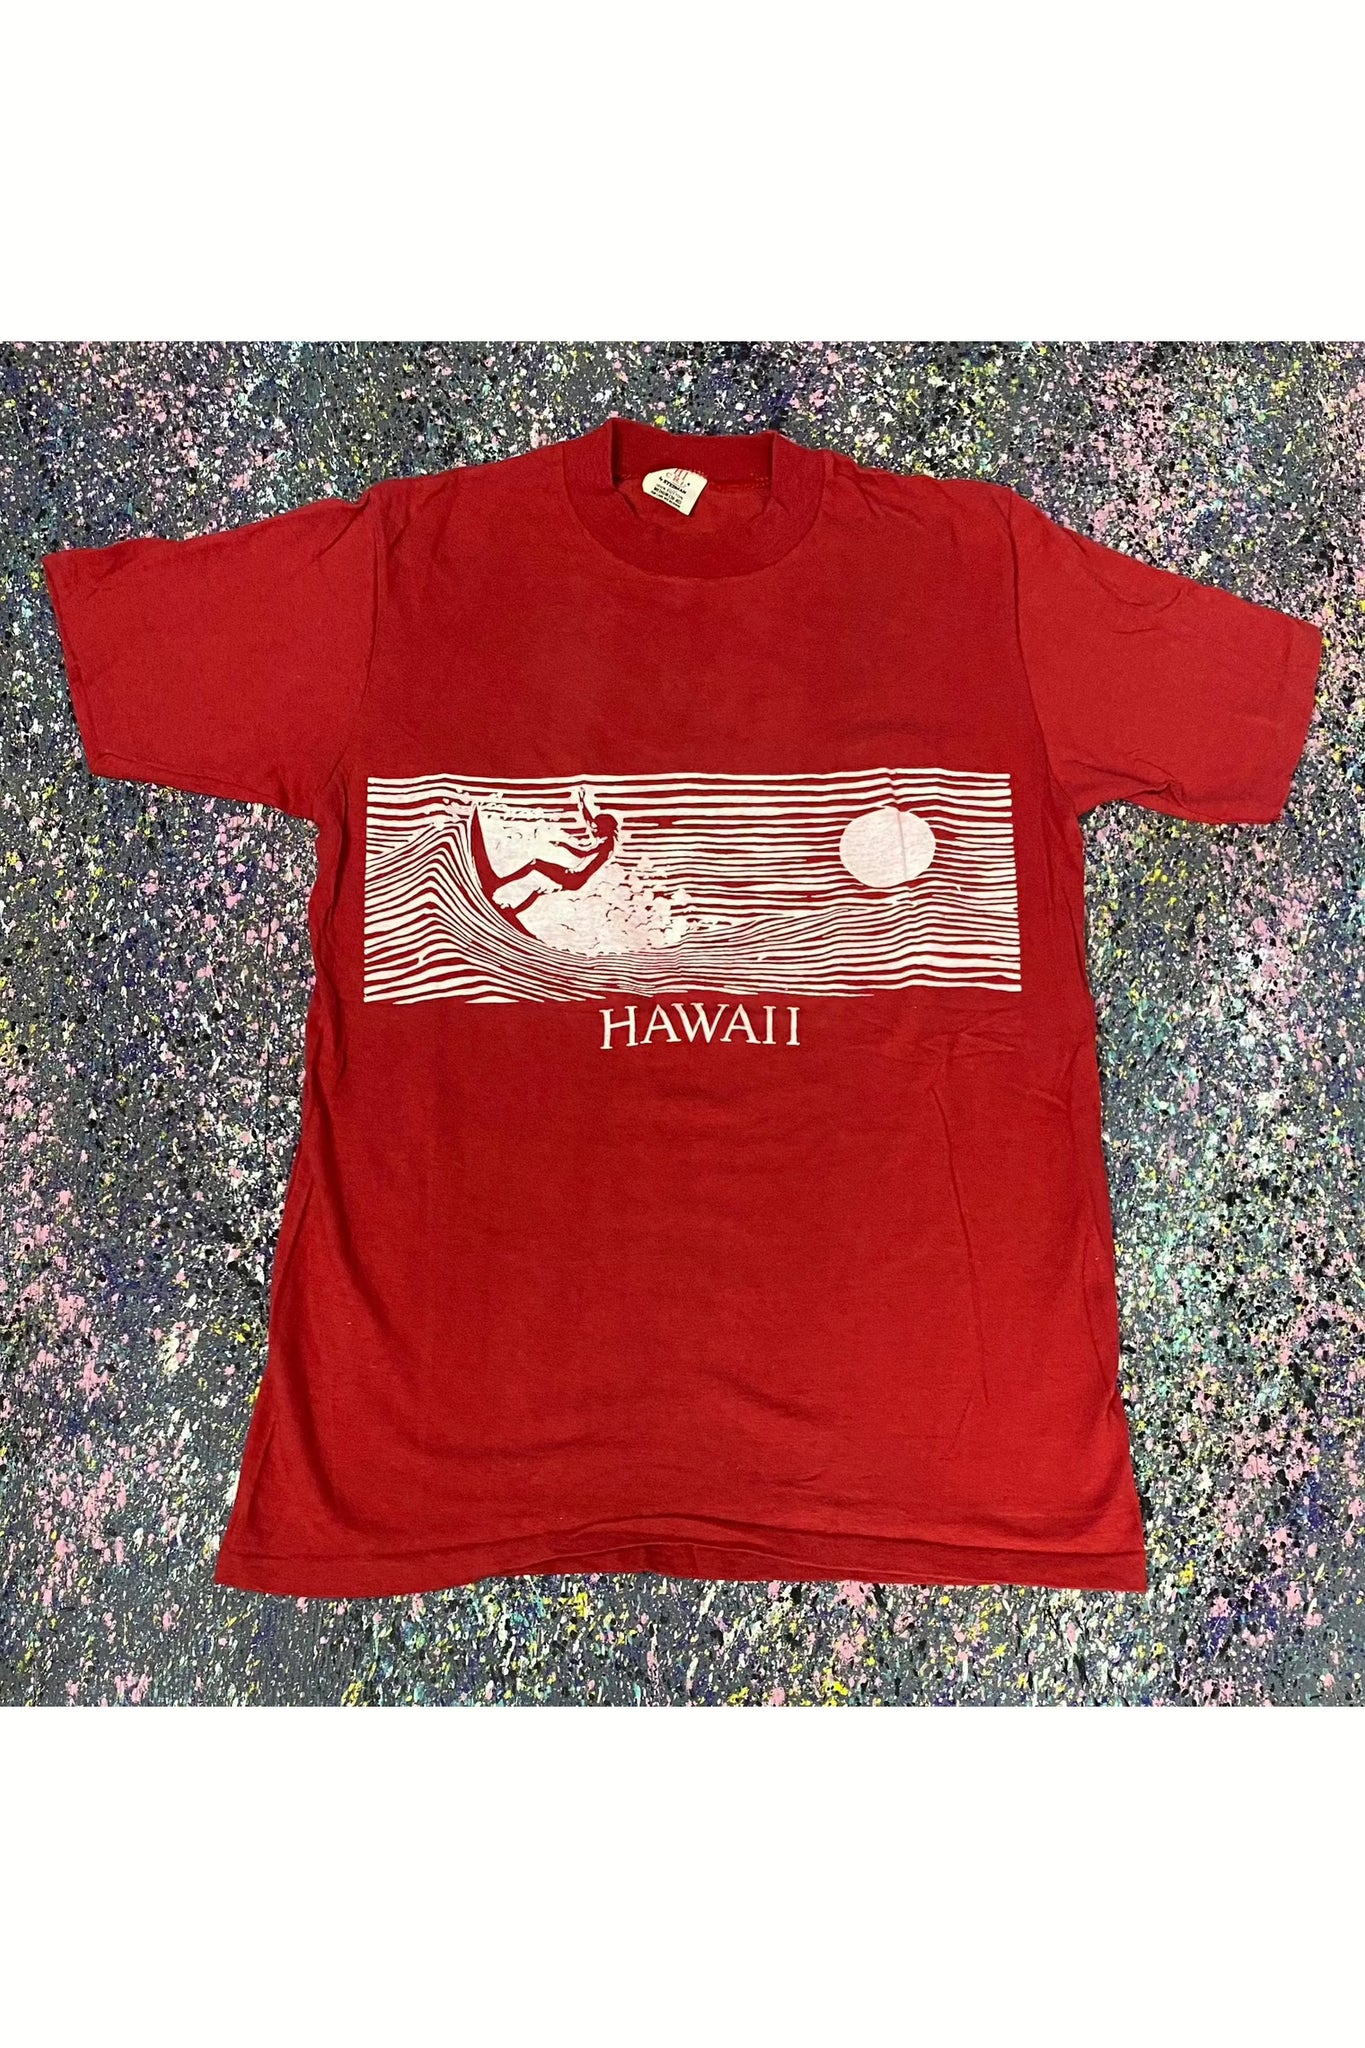 安い通販ビンテージ Hi Cru by Steadman Hawaii 75 Tシャツ トップス